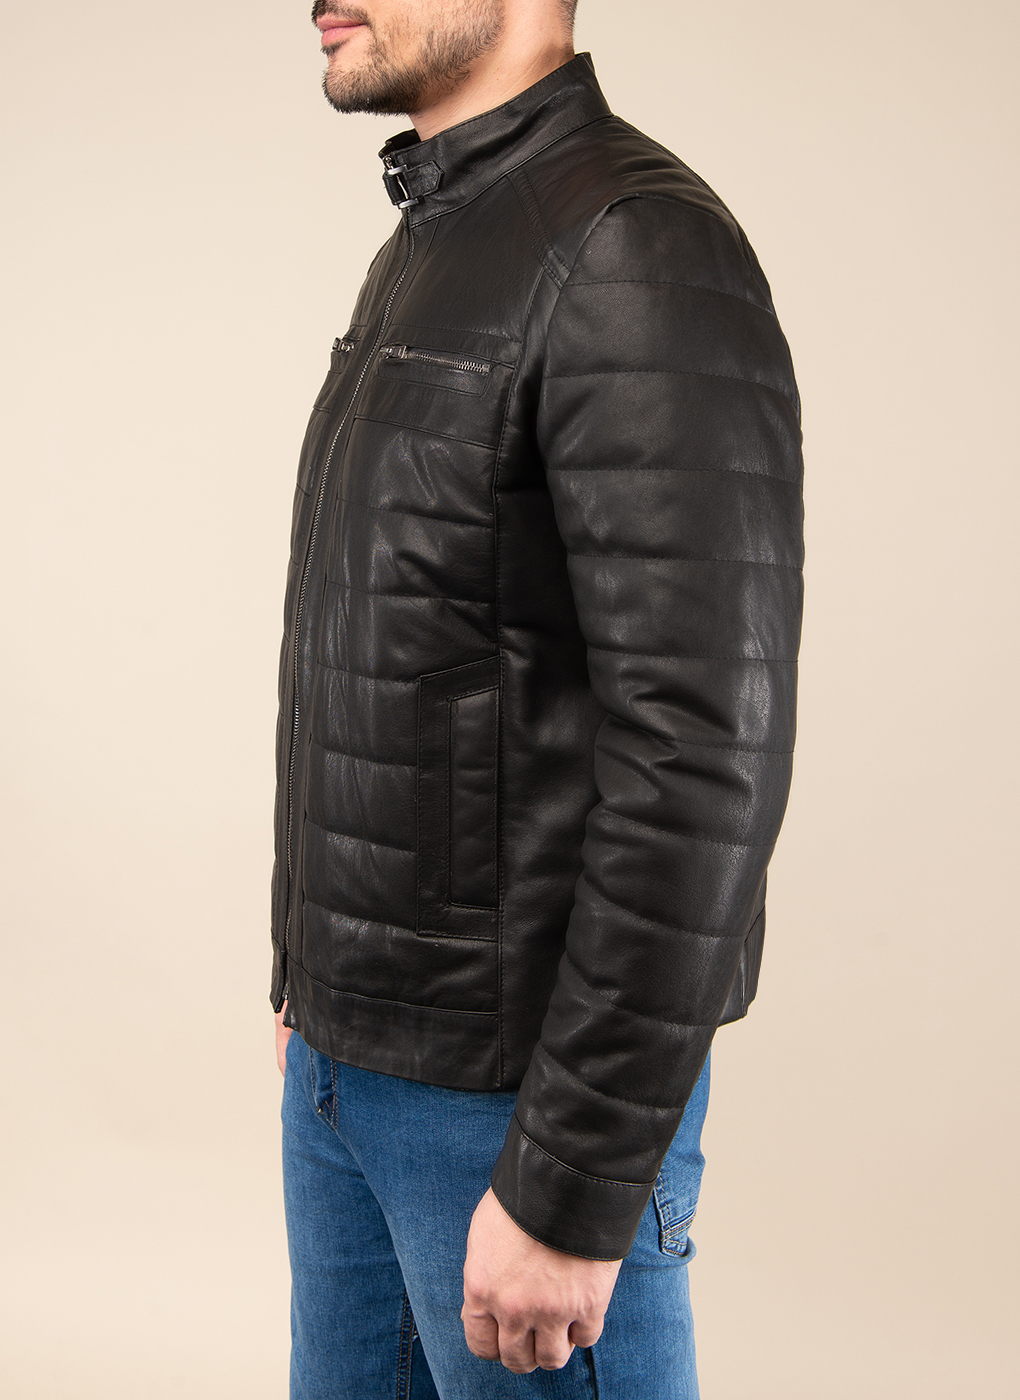 Кожаная куртка мужская Каляев 49639 черная 50 RU